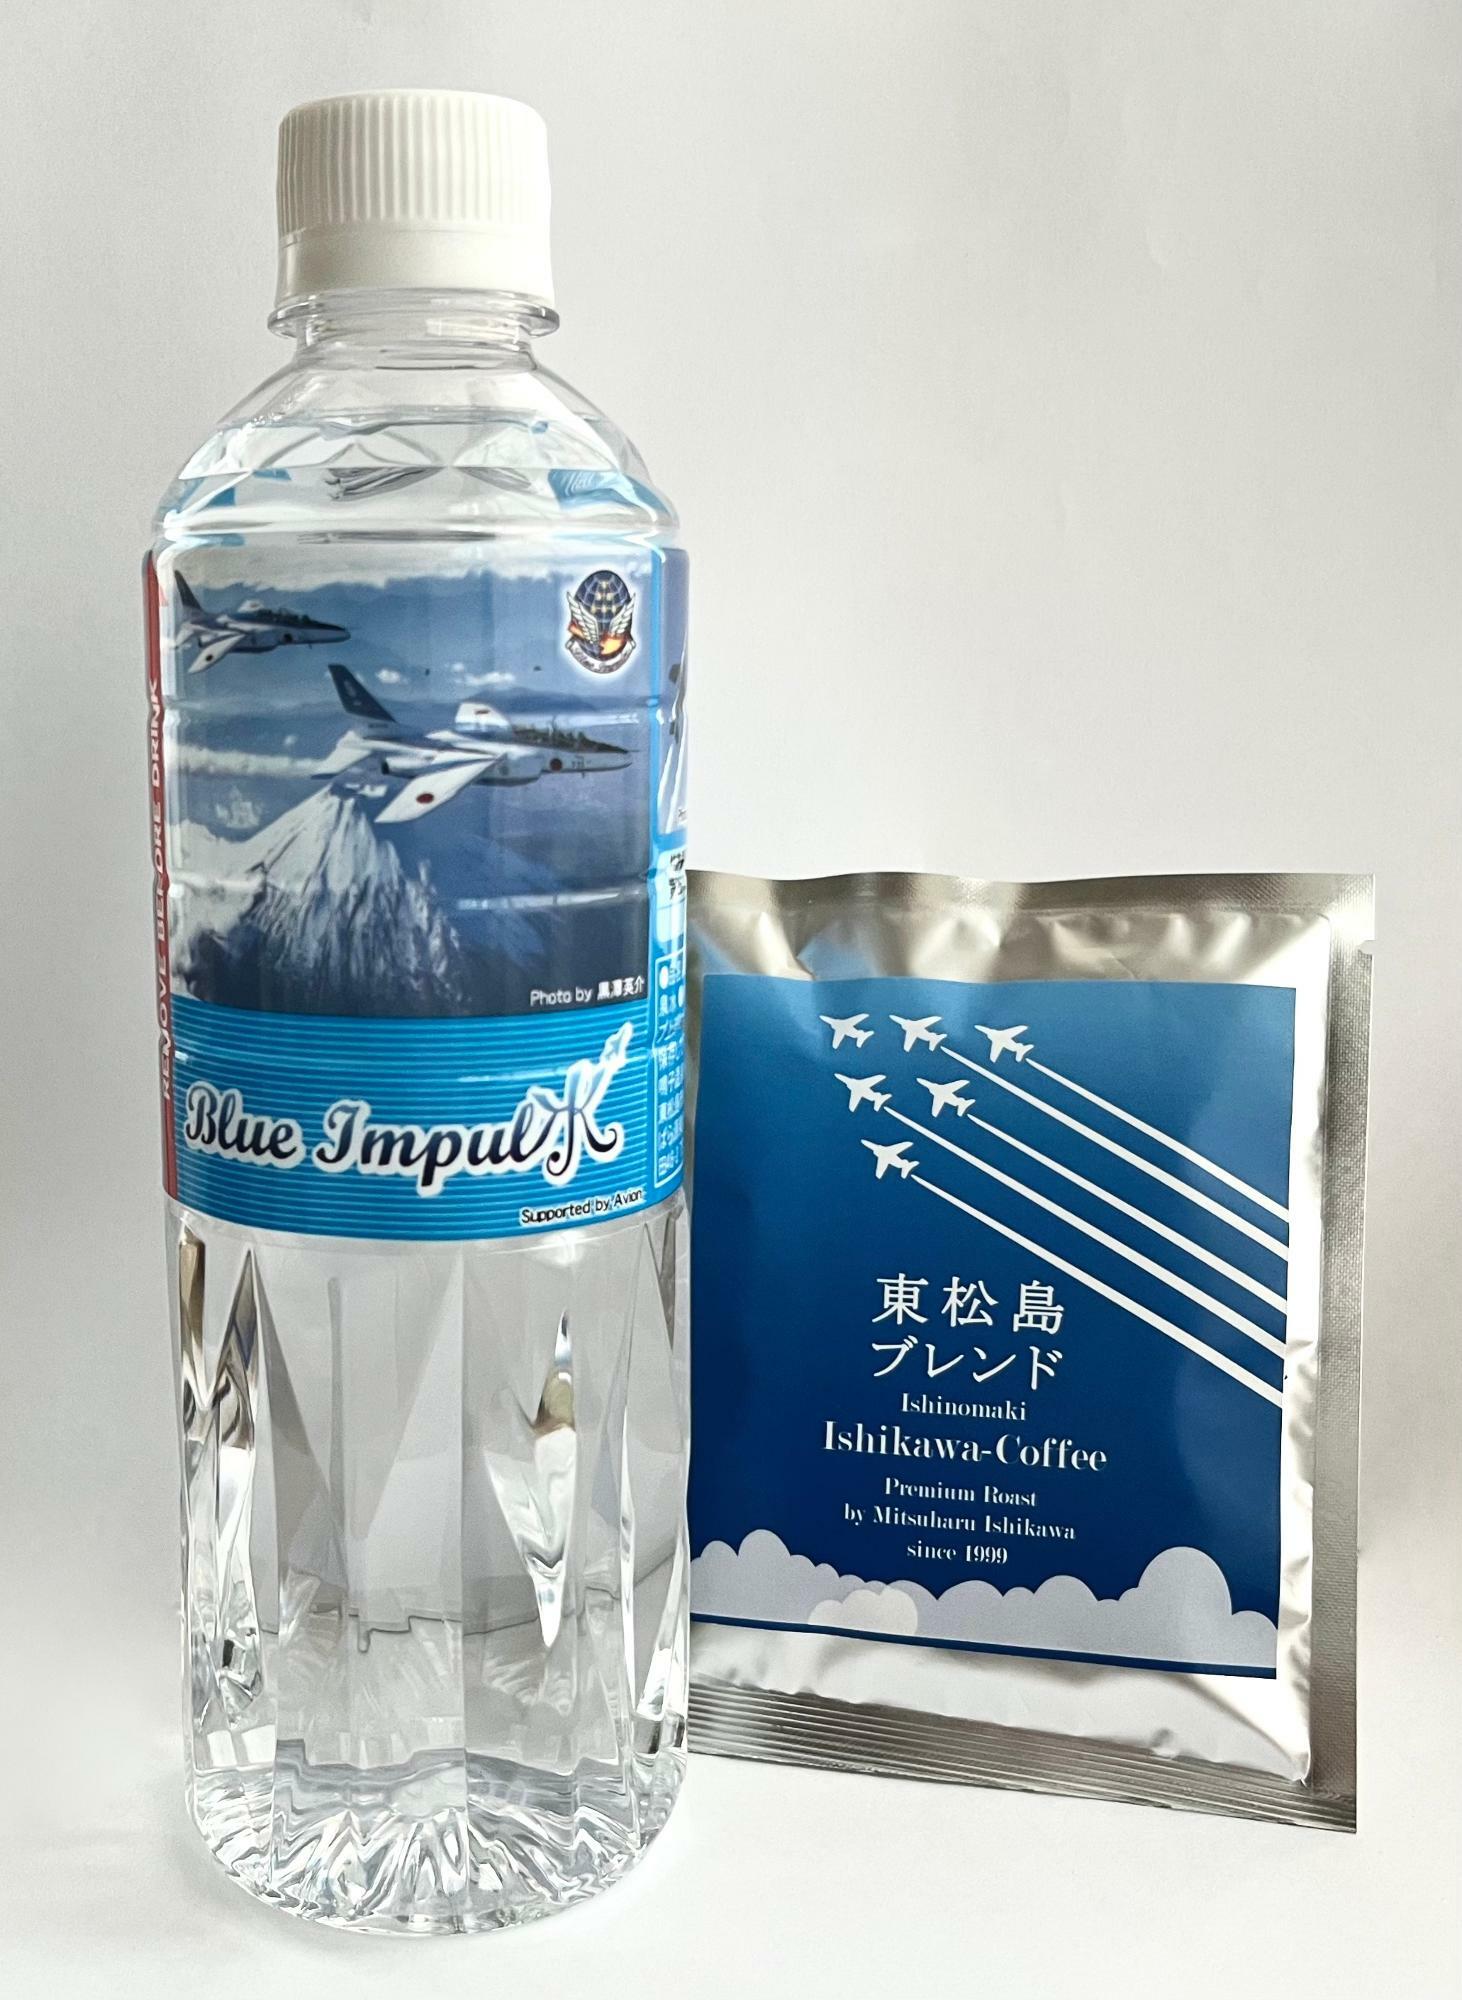 ▲ 「東松島ブレンド」と寄り添う「Blue Impul水」。温泉水で珈琲を淹れたら更に美味しさは膨らむ !?